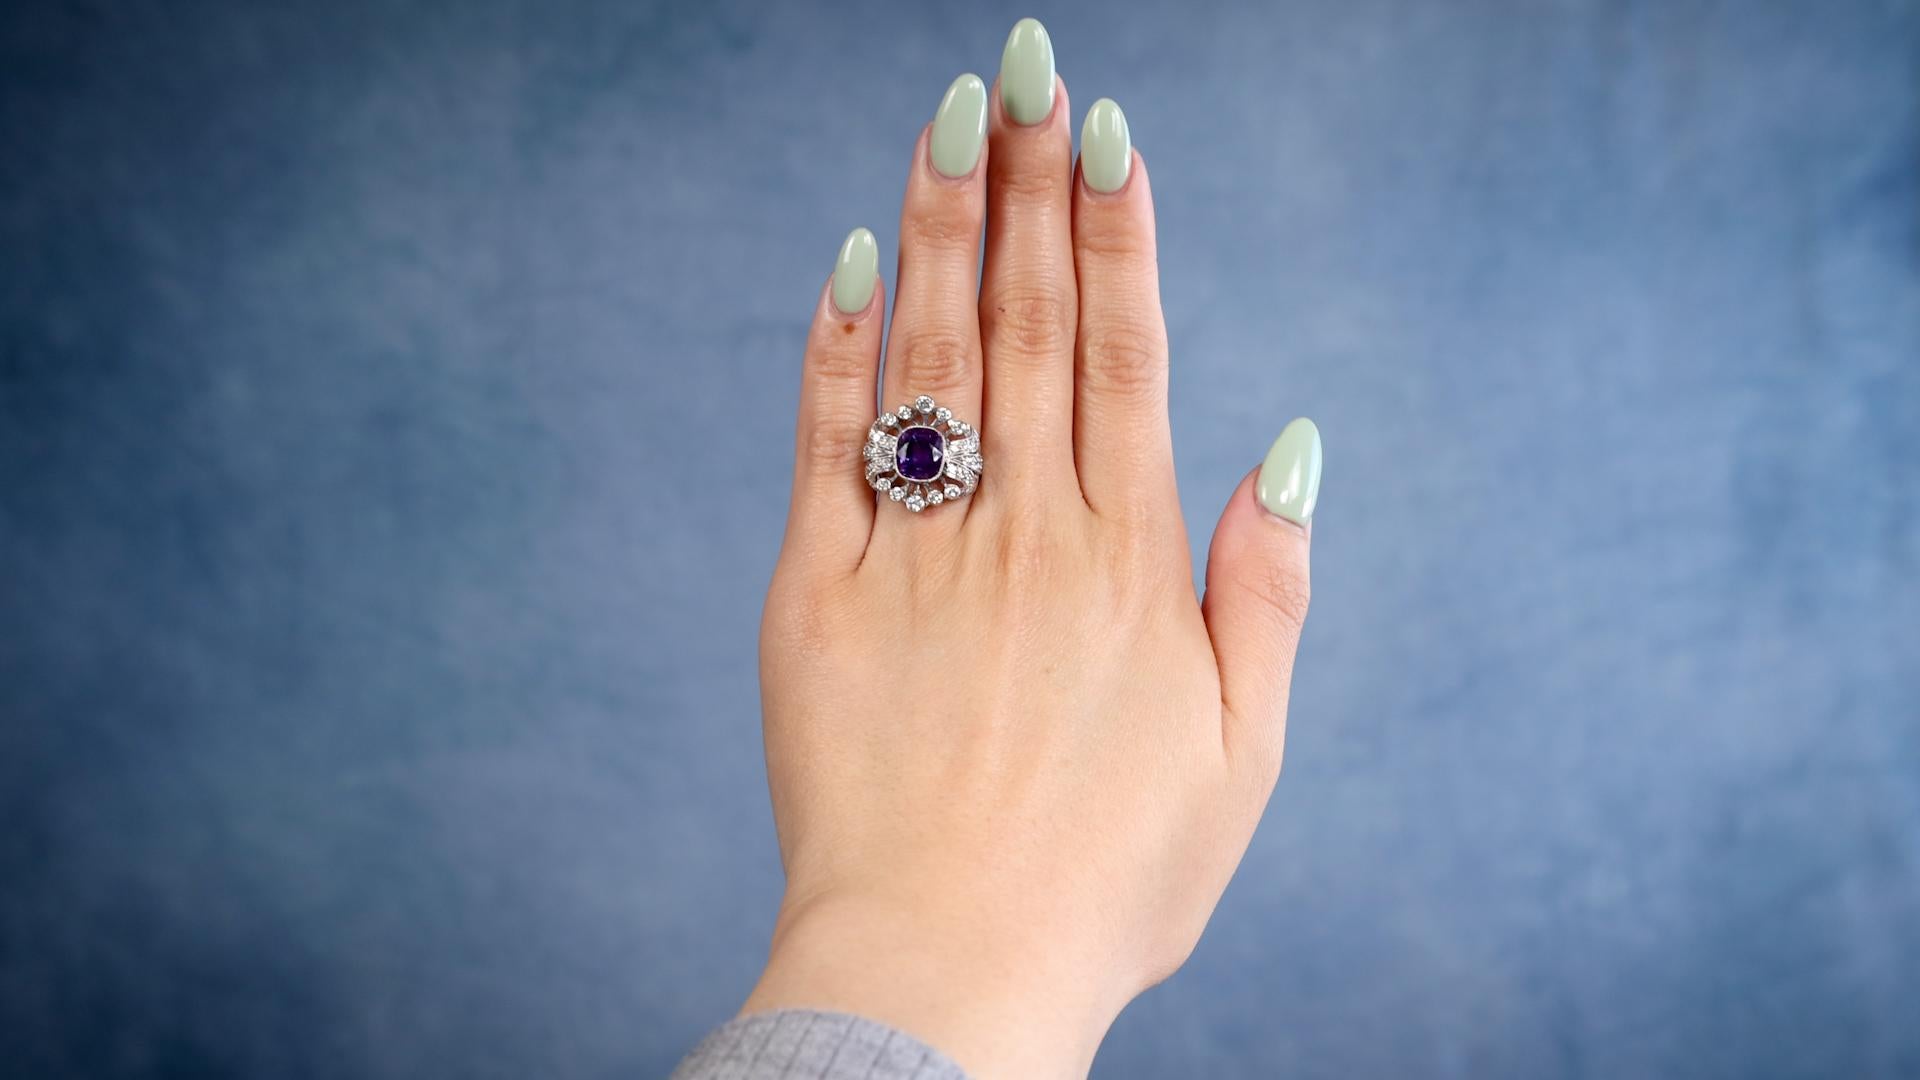 Ein Edwardian Revival Amethyst Diamant Platin Ring. Mit einem Amethysten im Kissenschliff mit einem Gewicht von ca. 2.20 Karat. Akzentuiert durch 32 runde Diamanten im Brillantschliff mit einem Gesamtgewicht von ca. 0,40 Karat, eingestuft als nahezu